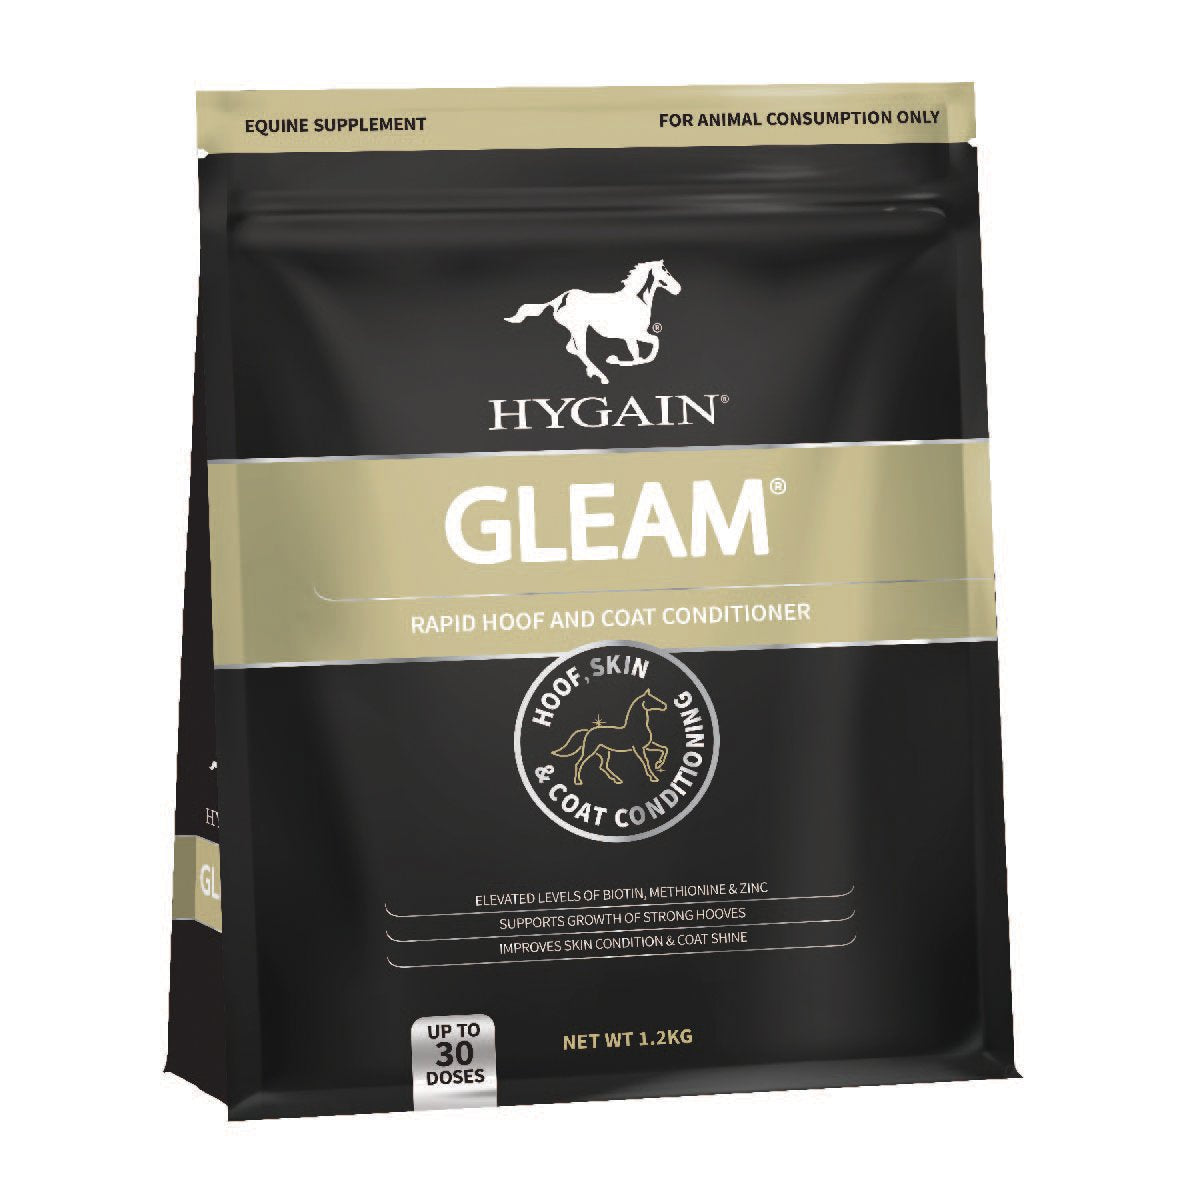 Hygain Gleam 1.2kg